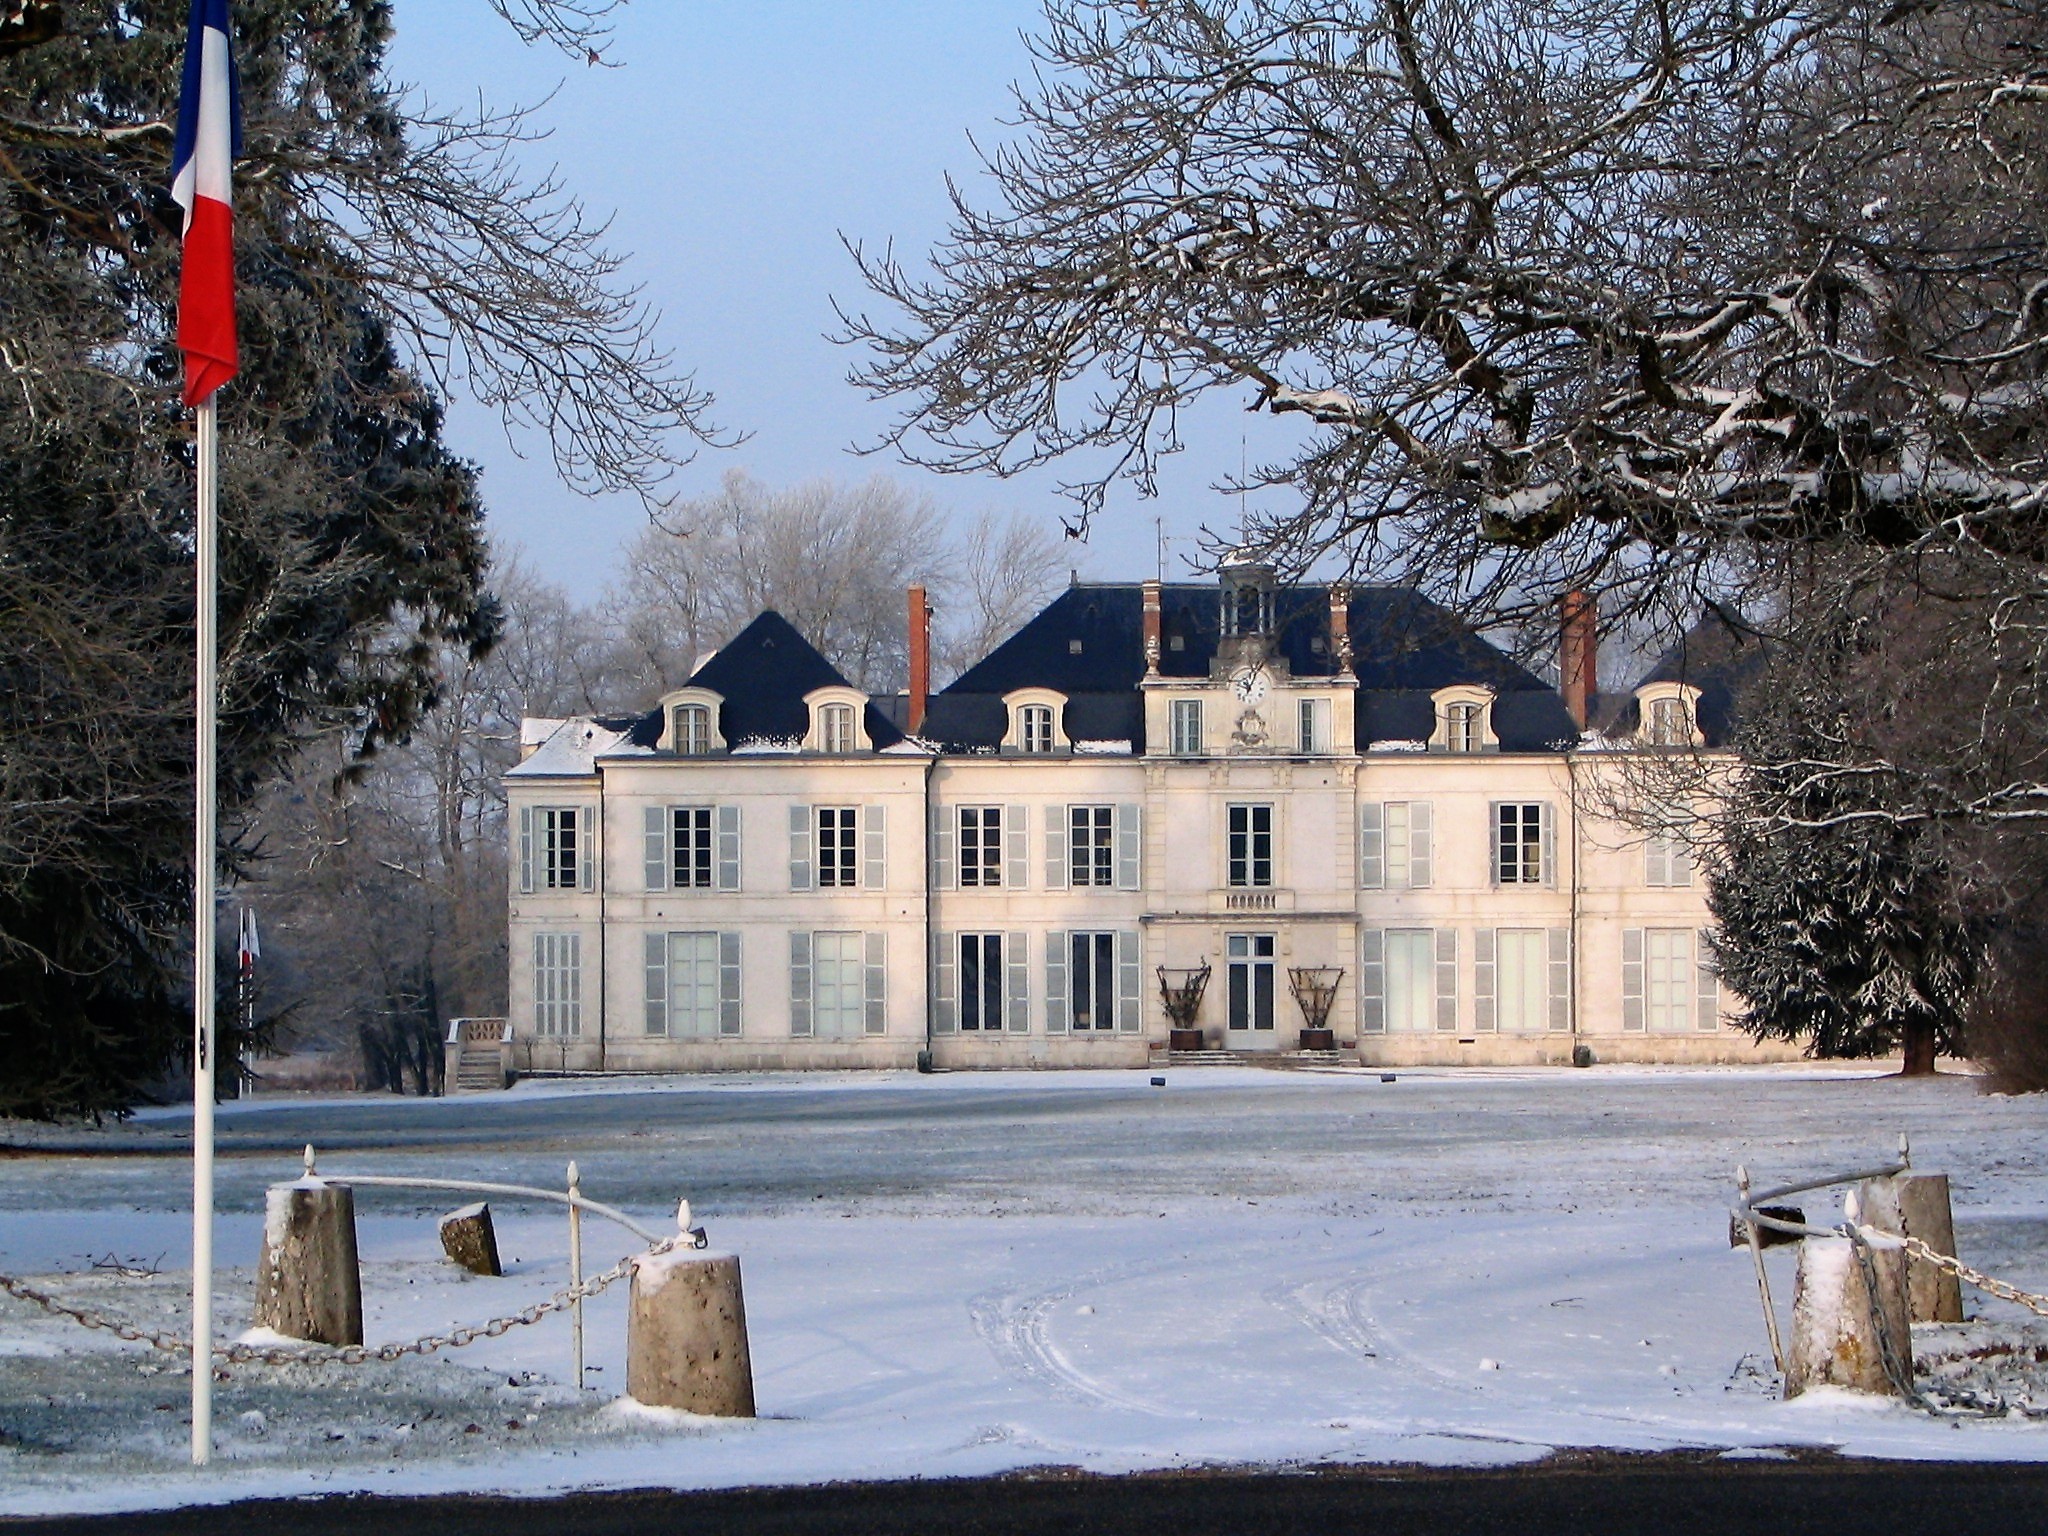 Chateau sous la neige